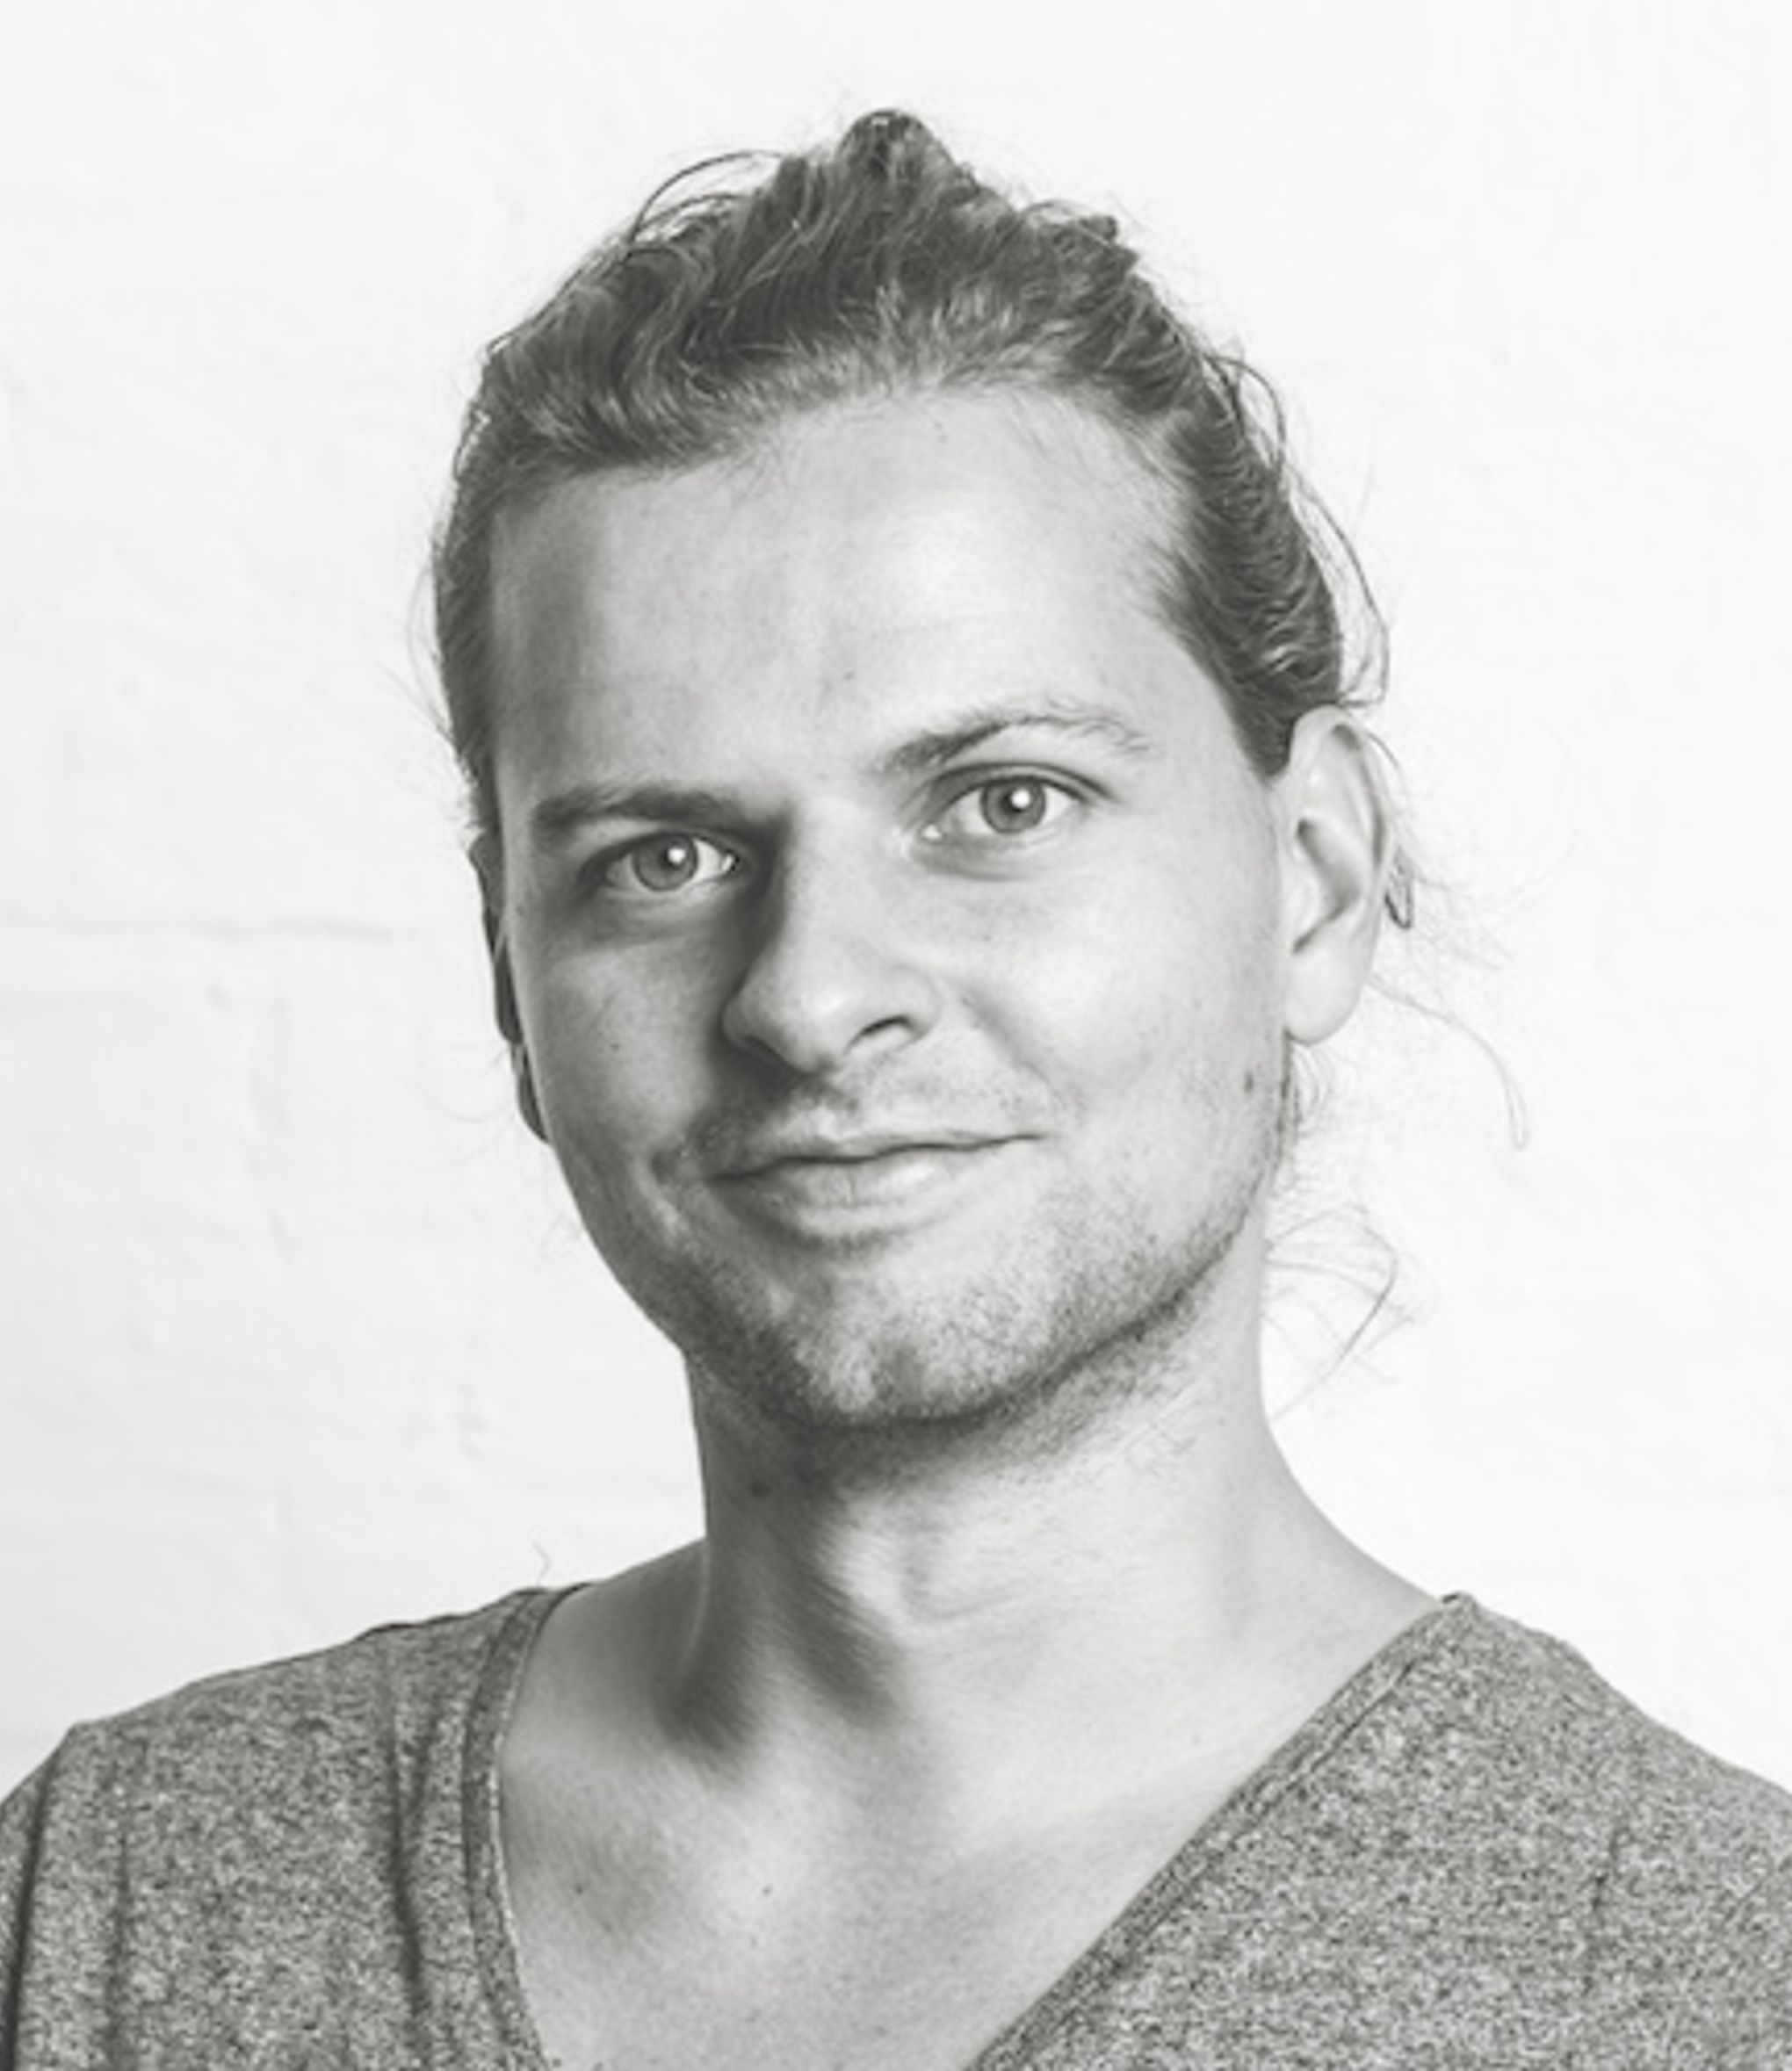 Co-founder and design lead, David v.Buseck, smiling